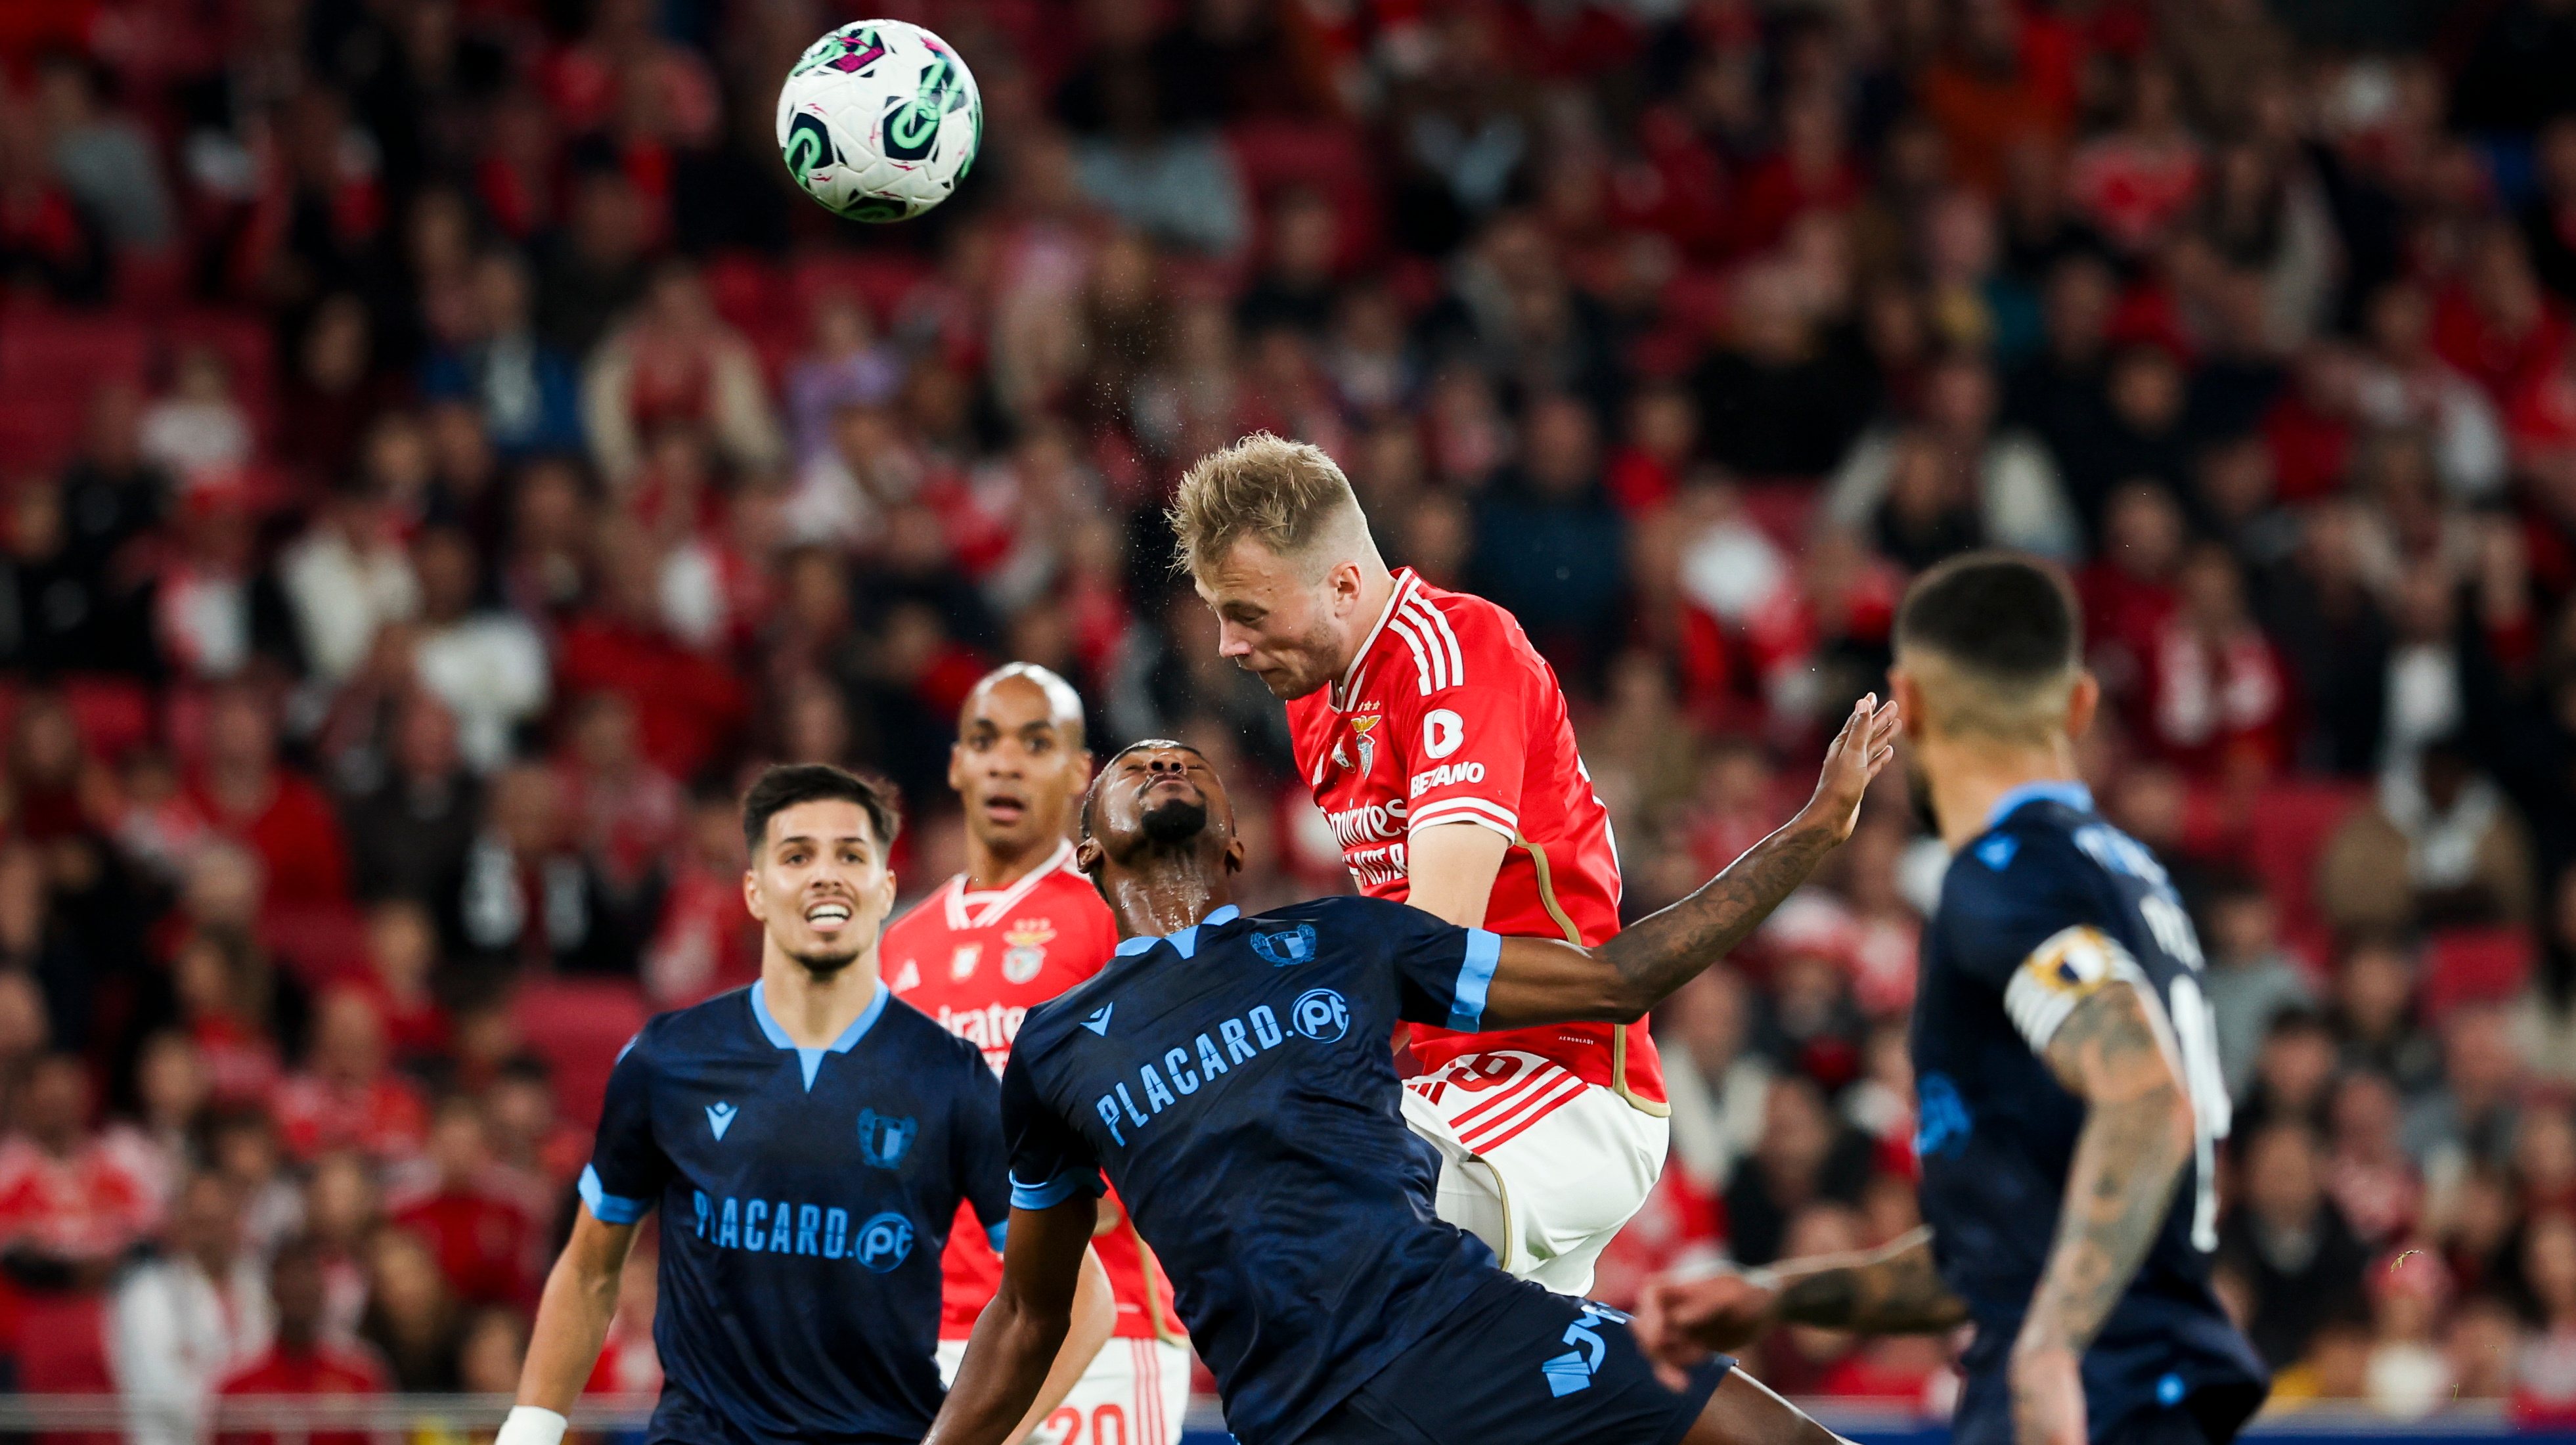 O avançado dinamarquês foi titular contra o Famalicão no jogo da 4.ª eliminatória da Taça